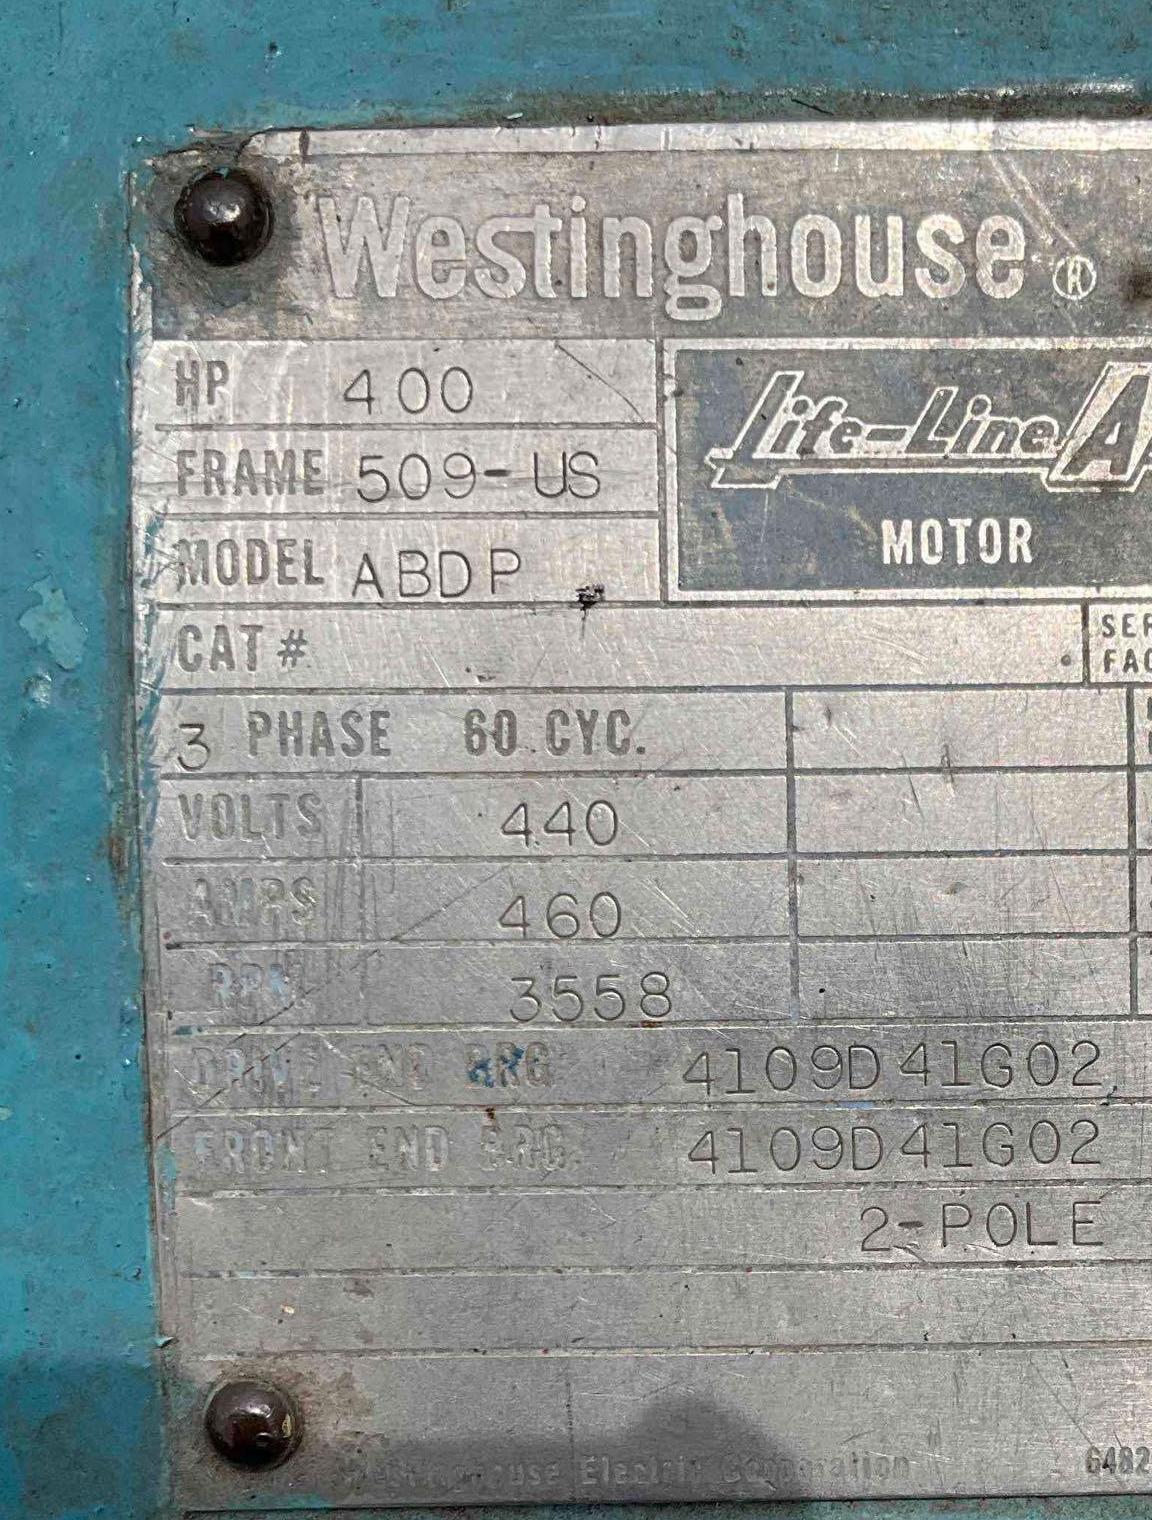 WESTINGHOUSE LIFE-LINE A MOTOR MODEL ABDP, 3 PH, 60 CYC, 440 V, 460 A, 3558 RPM, 400